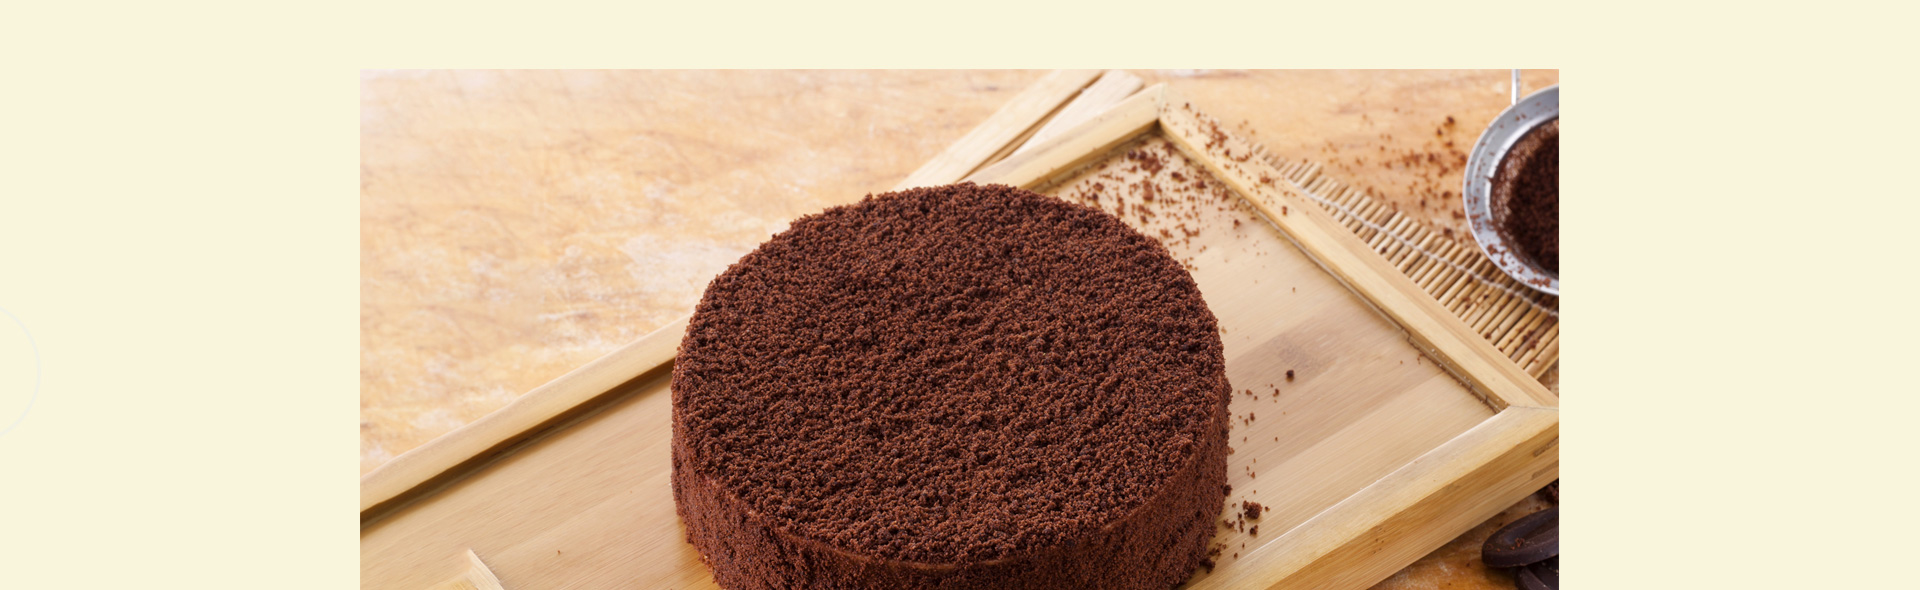 ebeecake小蜜蜂蛋糕 北海道巧克力双层芝士蛋糕